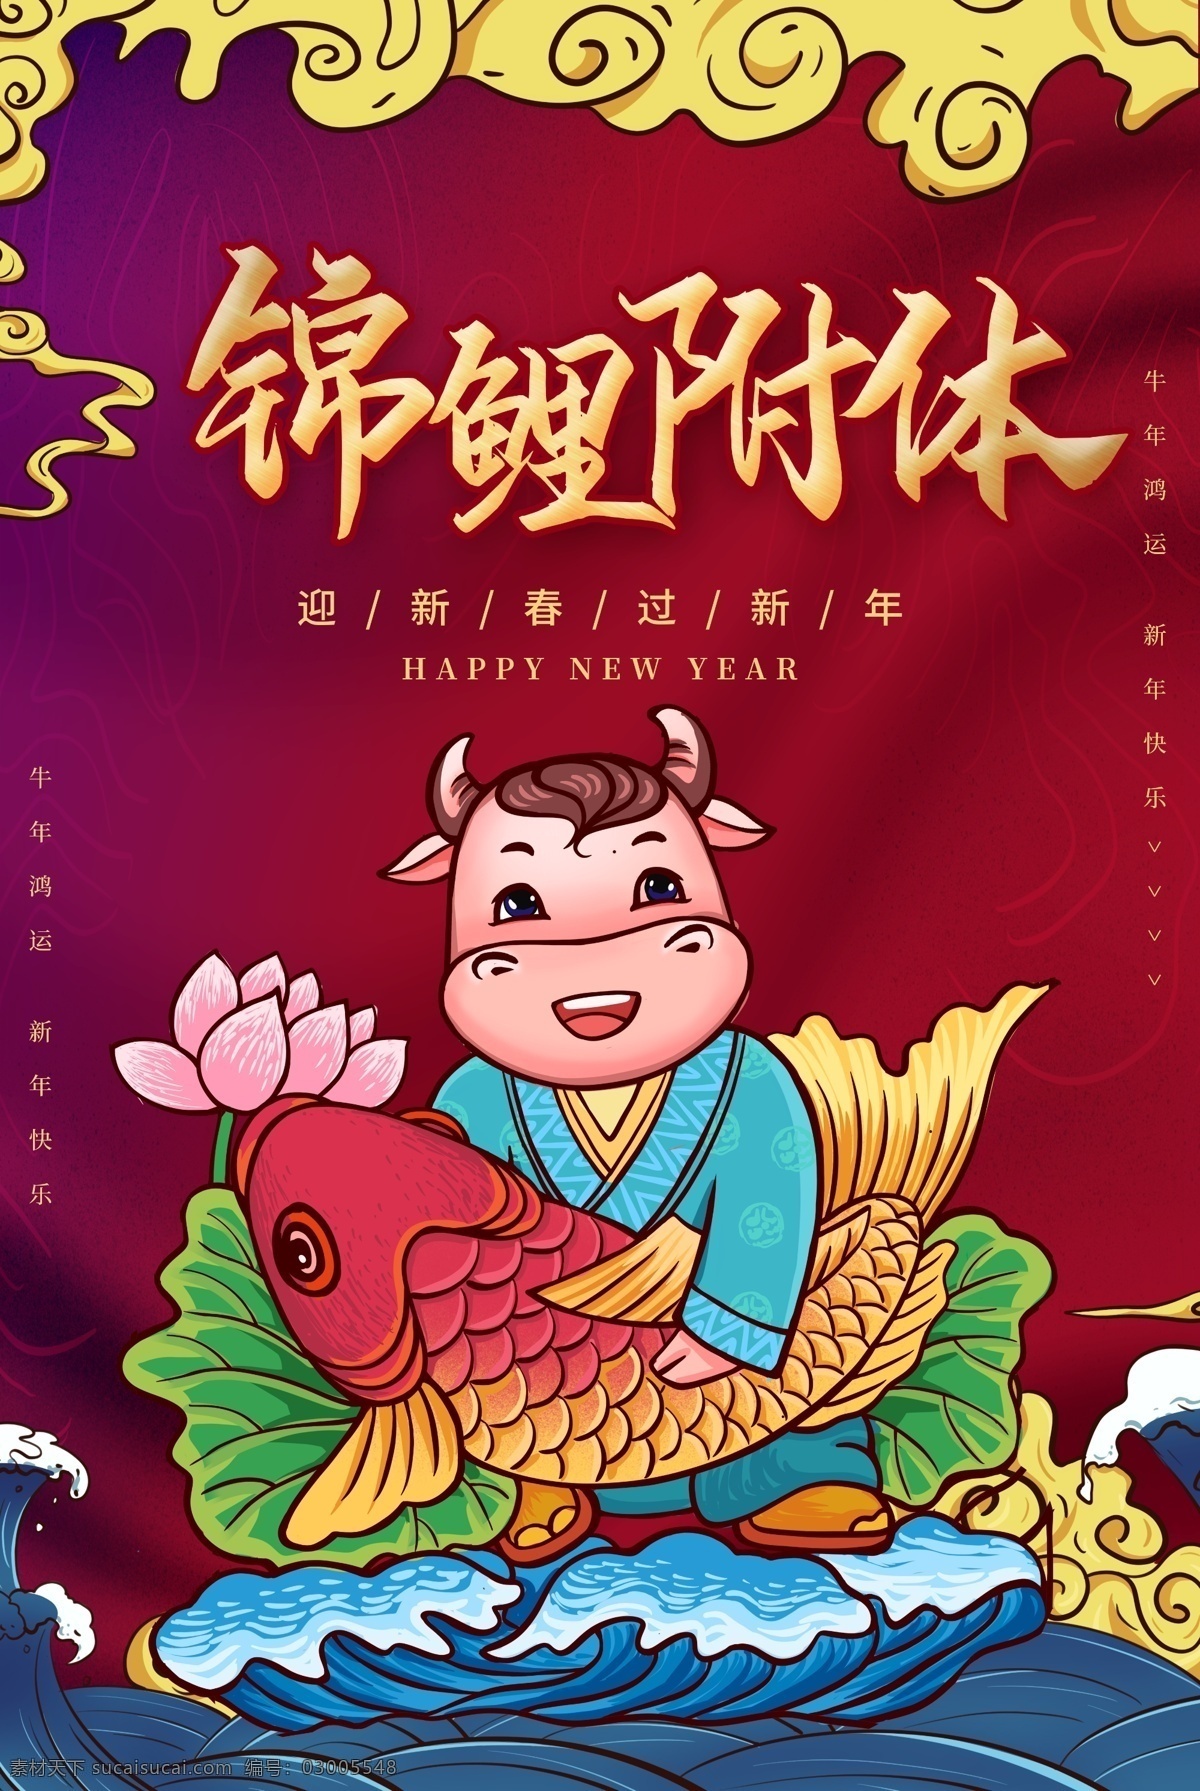 锦鲤 附体 新年 活动 海报 素材图片 锦鲤附体 传统节日